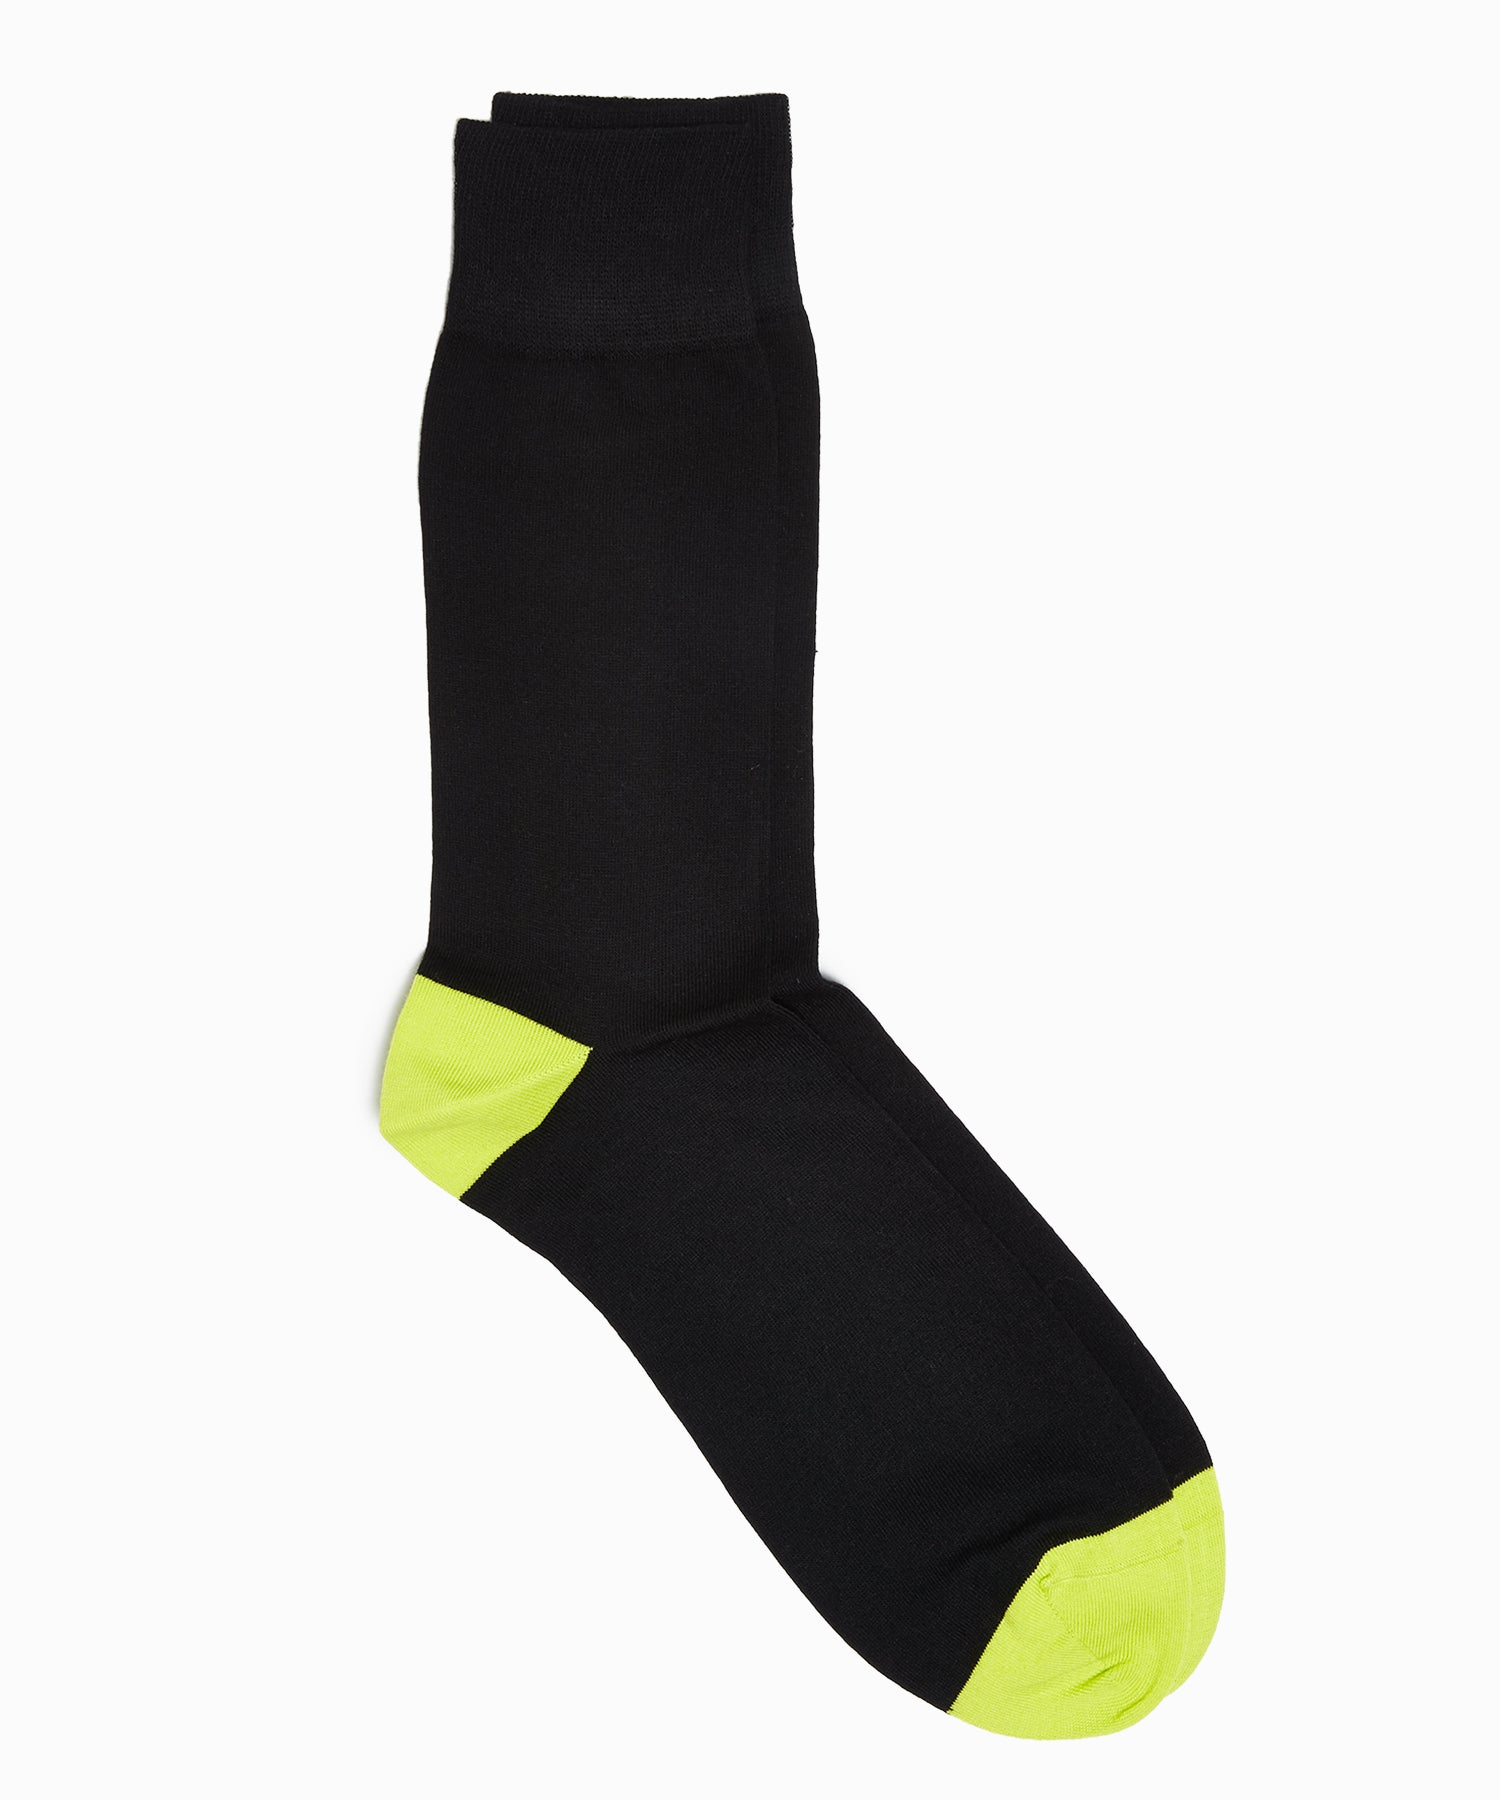 Corgi Contrast heel/toe socks in Black 